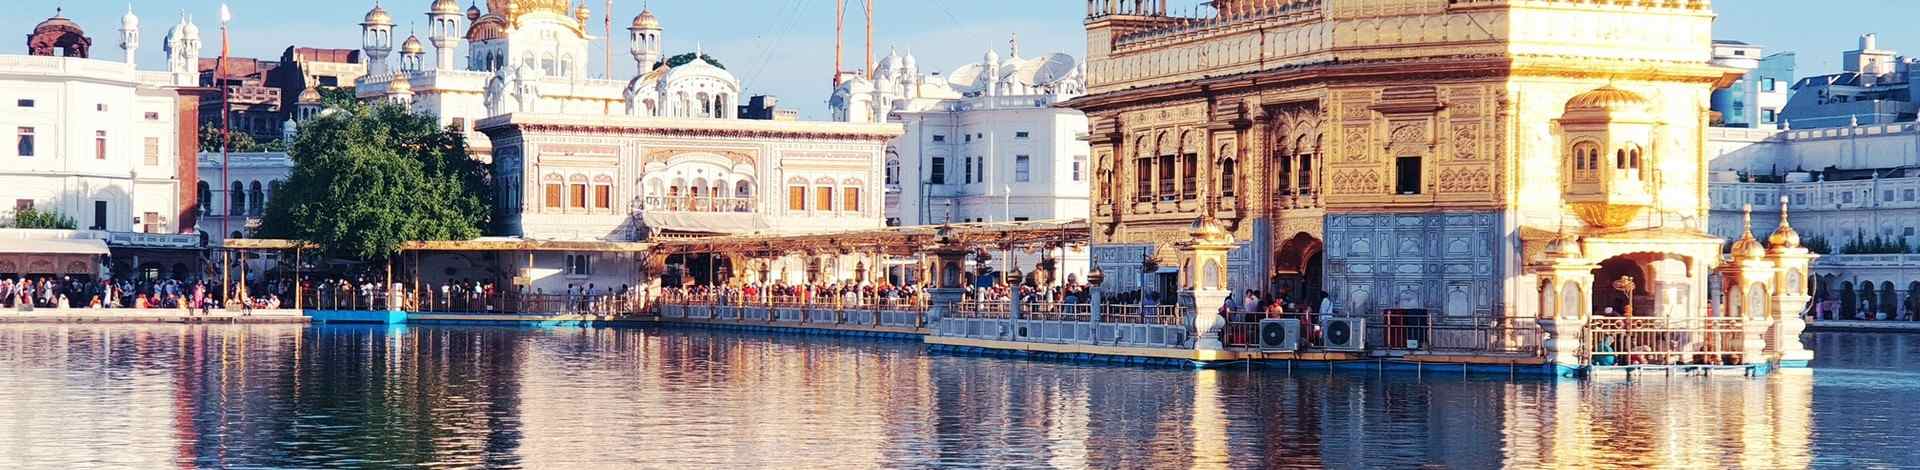 Amritsar temple or spiritualité